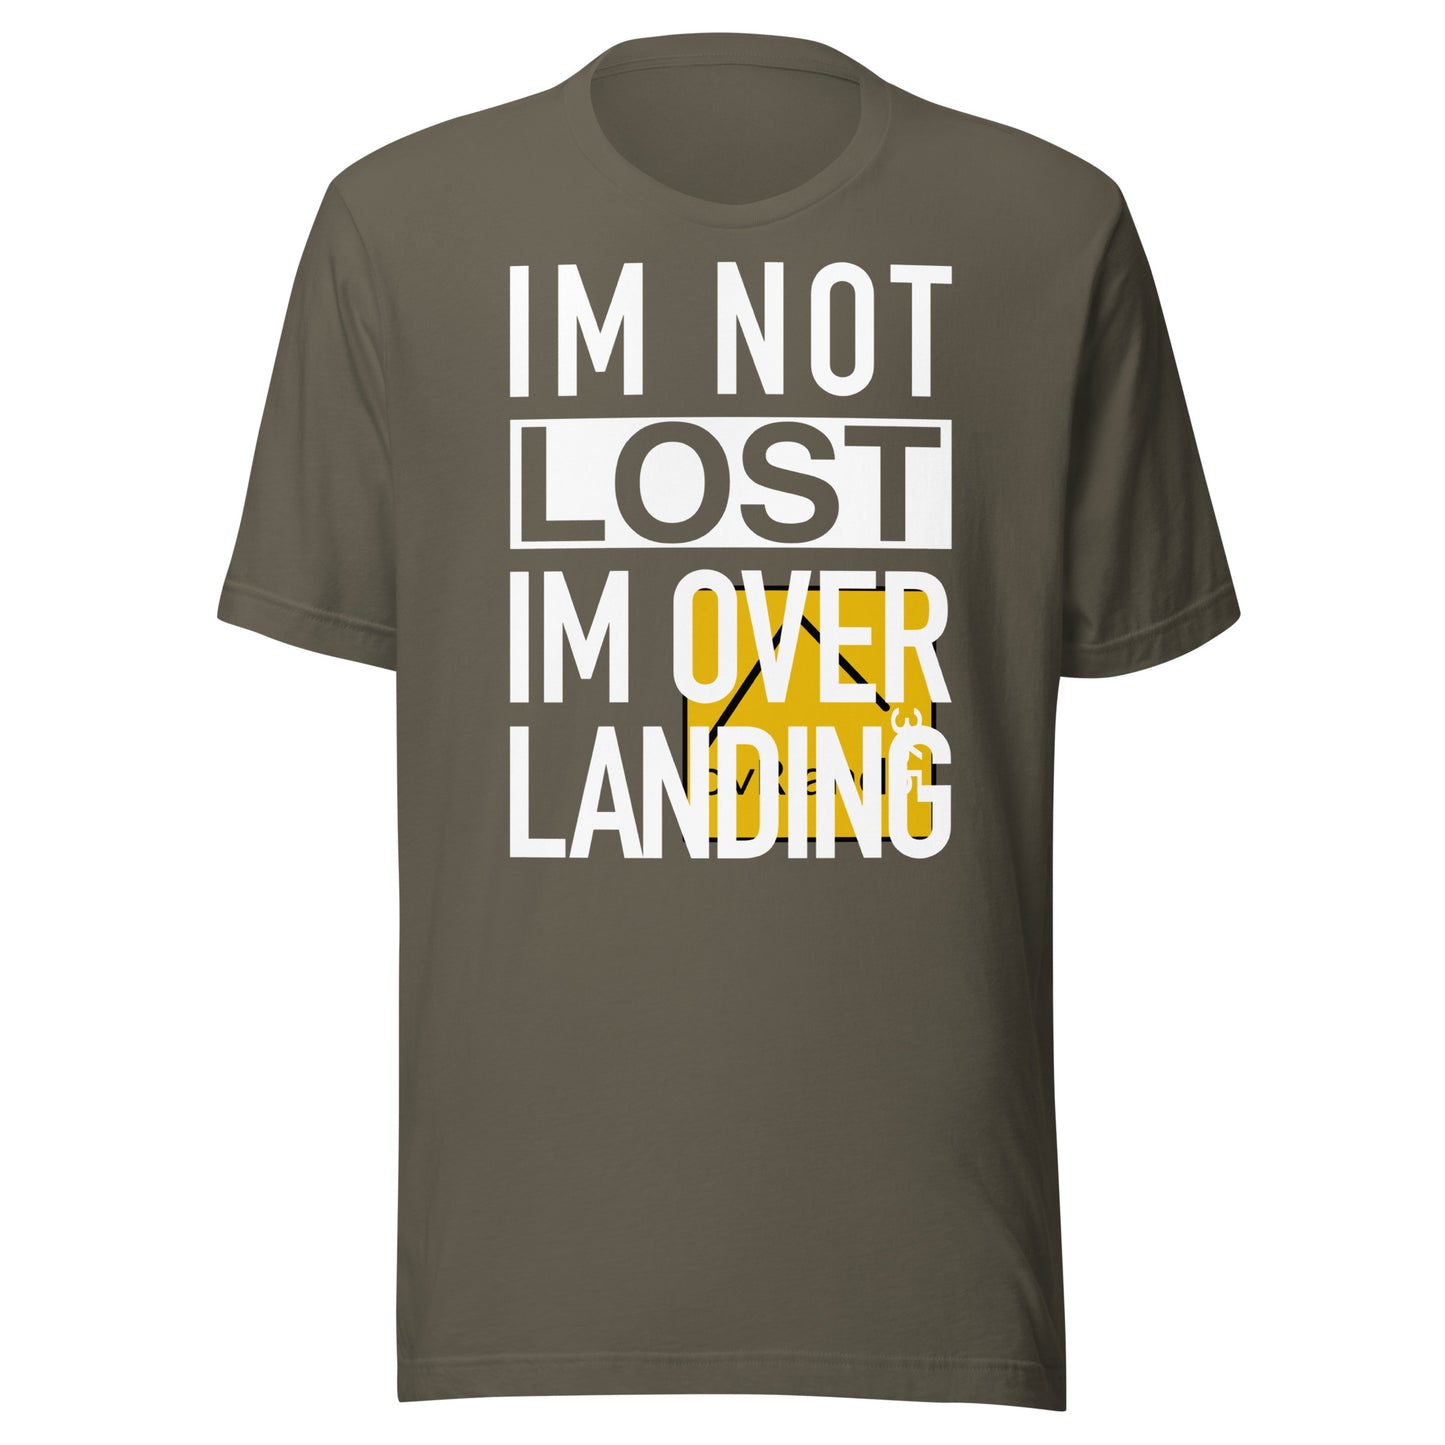 IM NOT LOST IM OVER LANDING - Green t-shirt. logo misprint. overland365.com